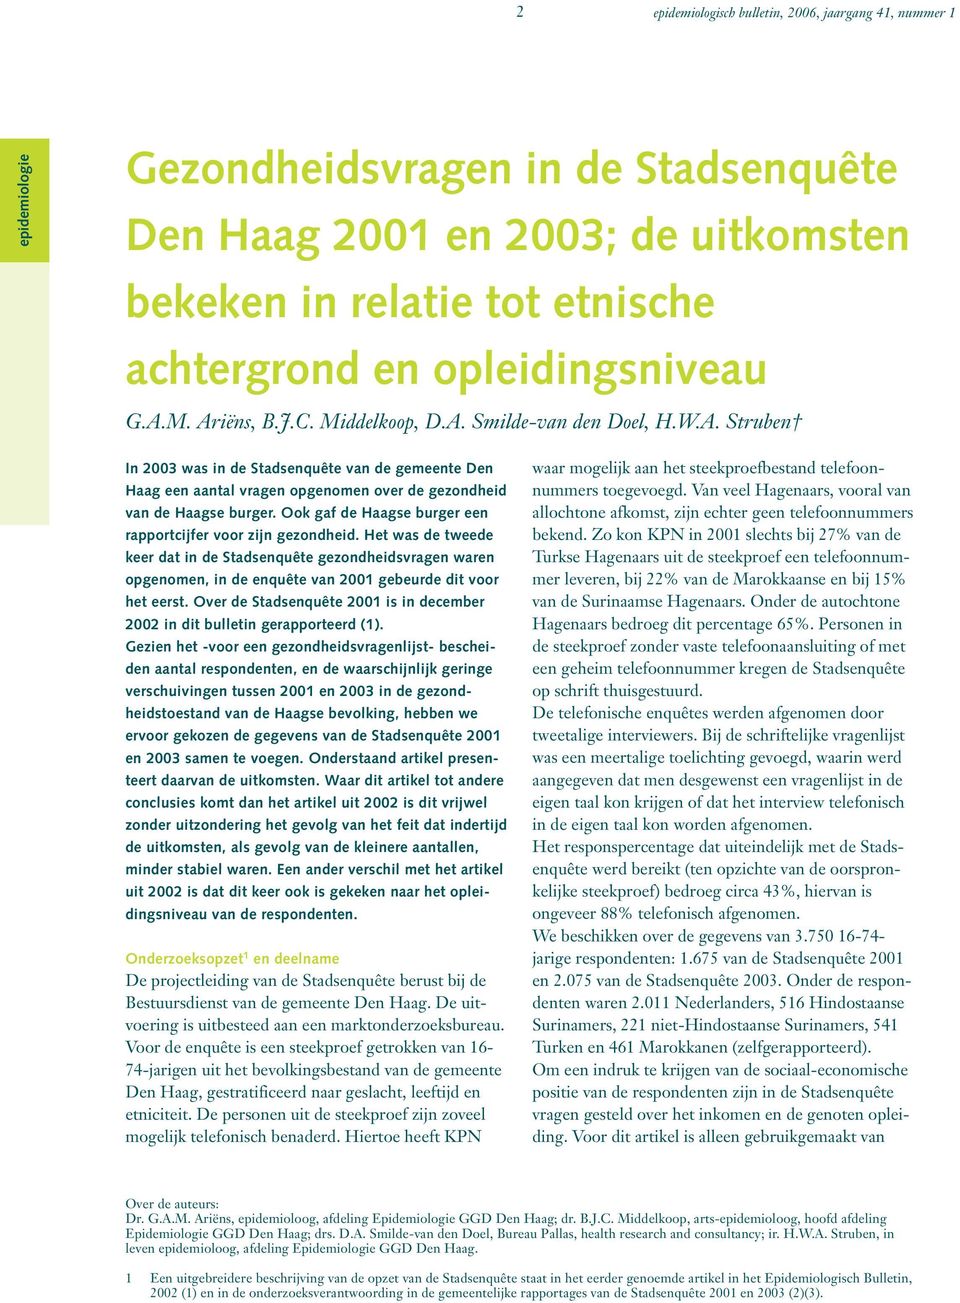 Ook gaf de Haagse burger een rapportcijfer voor zijn gezondheid. Het was de tweede keer dat in de Stadsenquête gezondheidsvragen waren opgenomen, in de enquête van 2001 gebeurde dit voor het eerst.